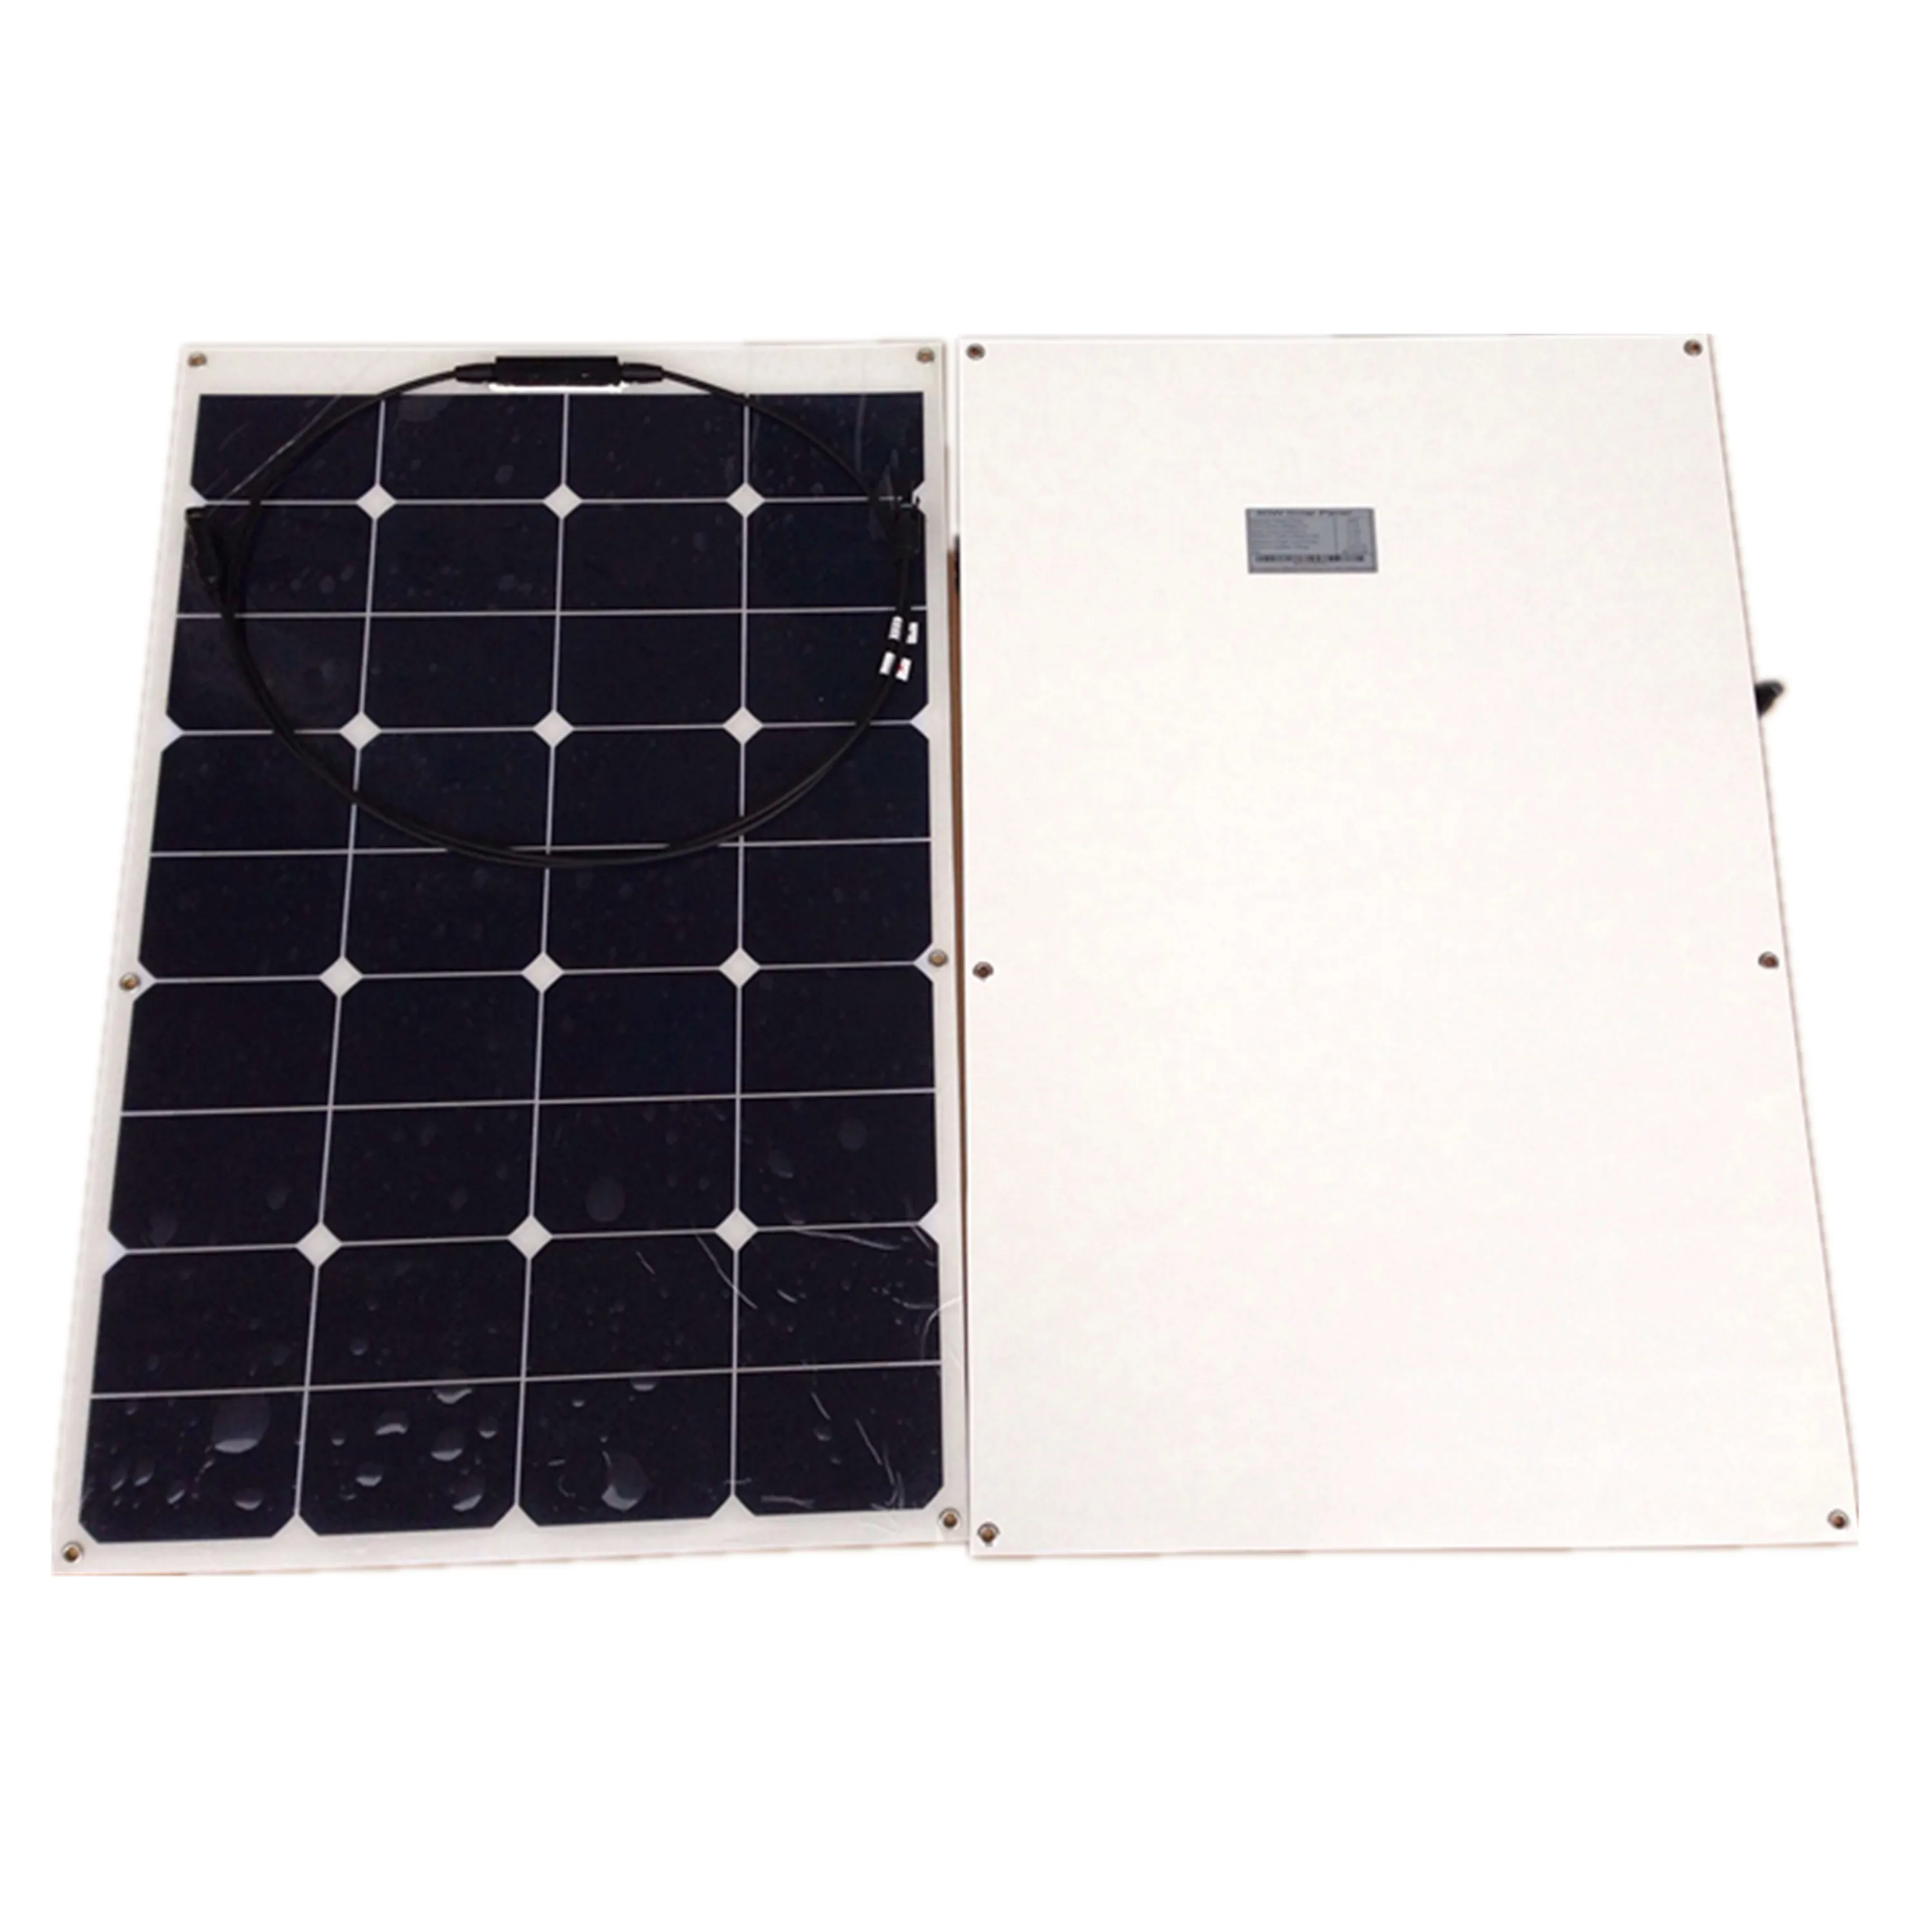 RG Sunpower Гибкая солнечная панель 110вт; монокристаллическая полугибкая солнечная панель 110 Вт; солнечная батарея 19.1% эффективность зарядки